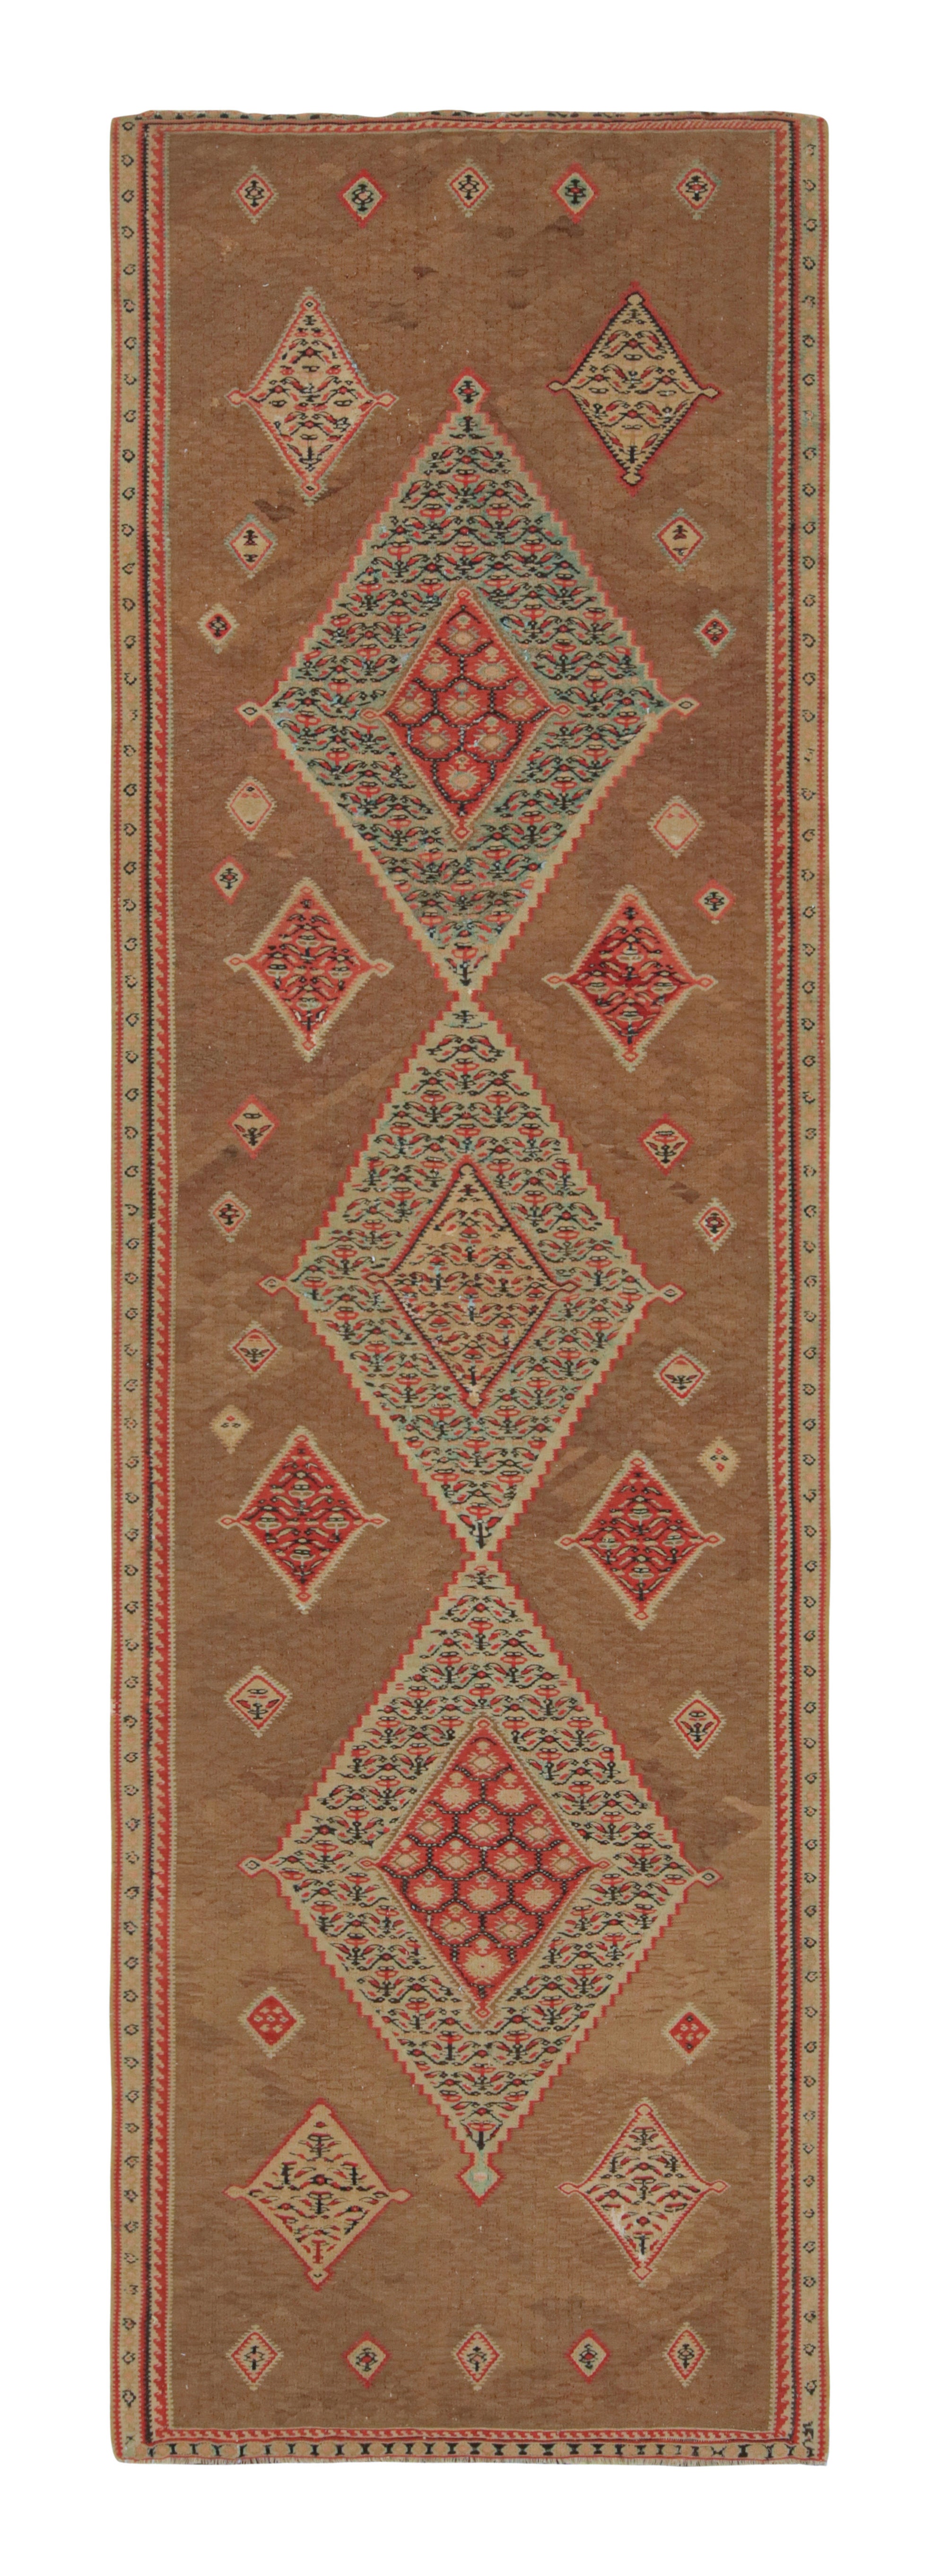 Senneh Beige and Red Wool Persian Kilim Rug by Rug & Kilim